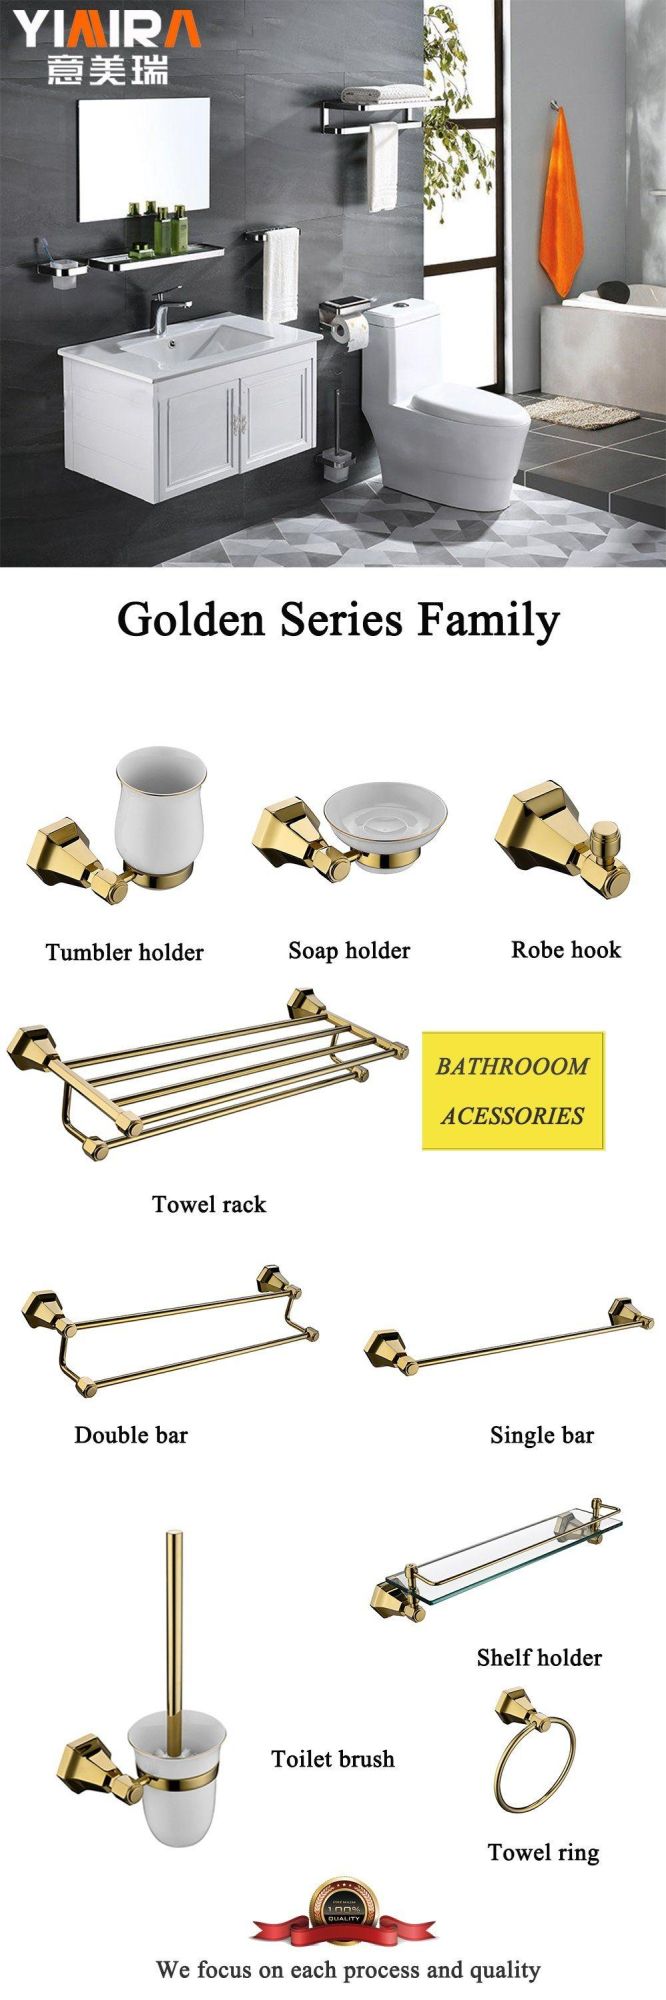 India Market Design Golden Plating Bathroom Soap Holder Mr-T8007g